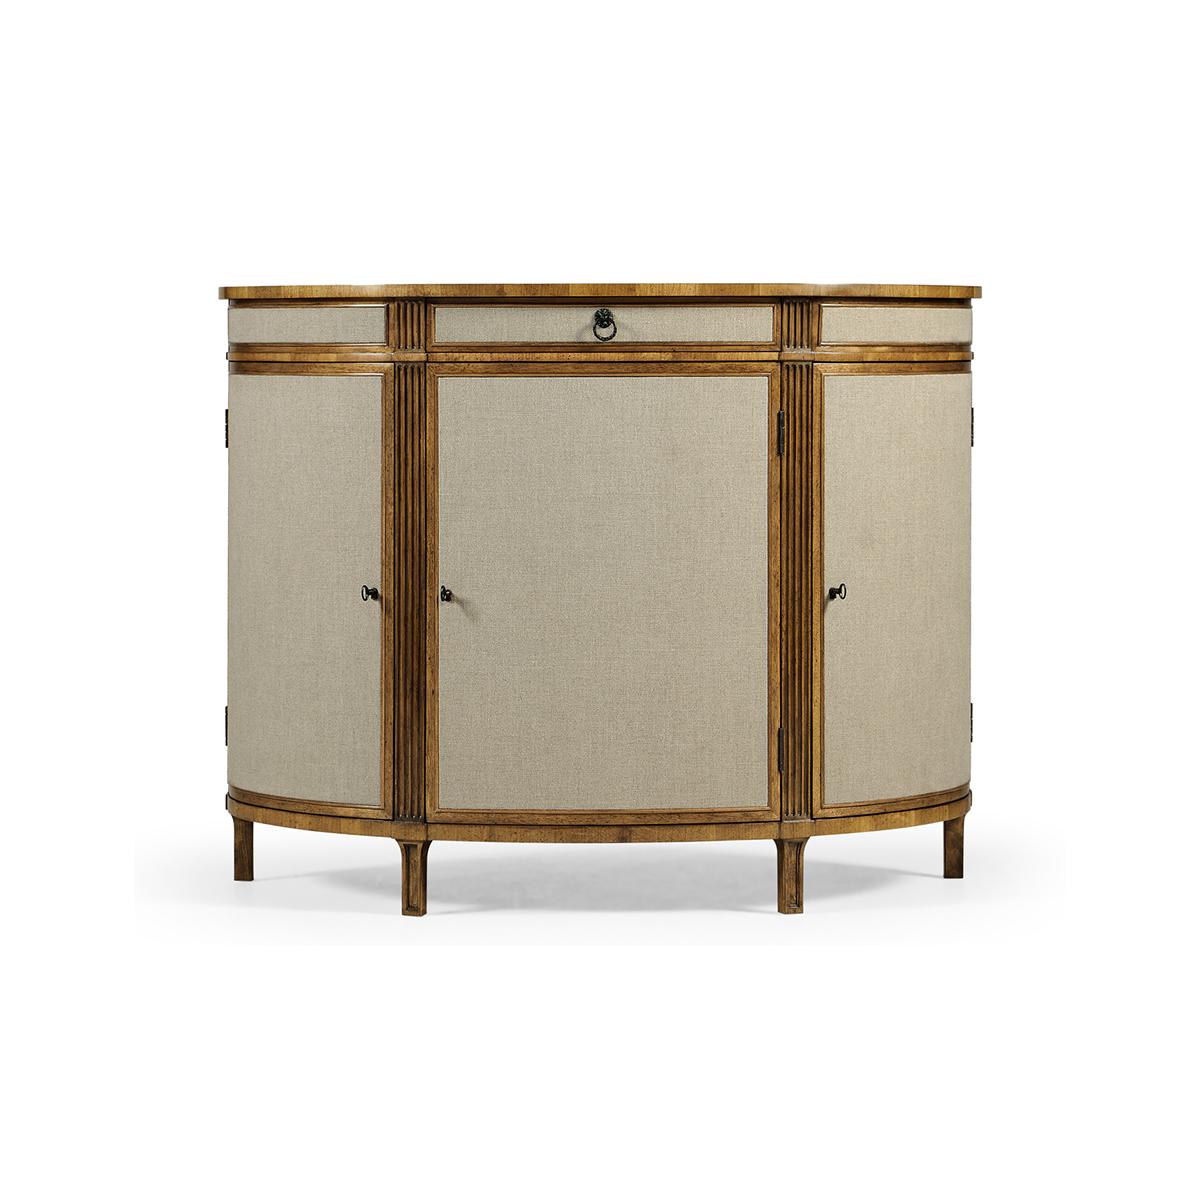 Georgian Modern Demi Lune Cabinet - eine raffinierte Verschmelzung von klassischem und zeitgenössischem Design. Dieser fachmännisch gefertigte Schrank besteht aus einem massiven Gehäuse mit Schranktüren aus Kravet-Leinenstoff und dezenten